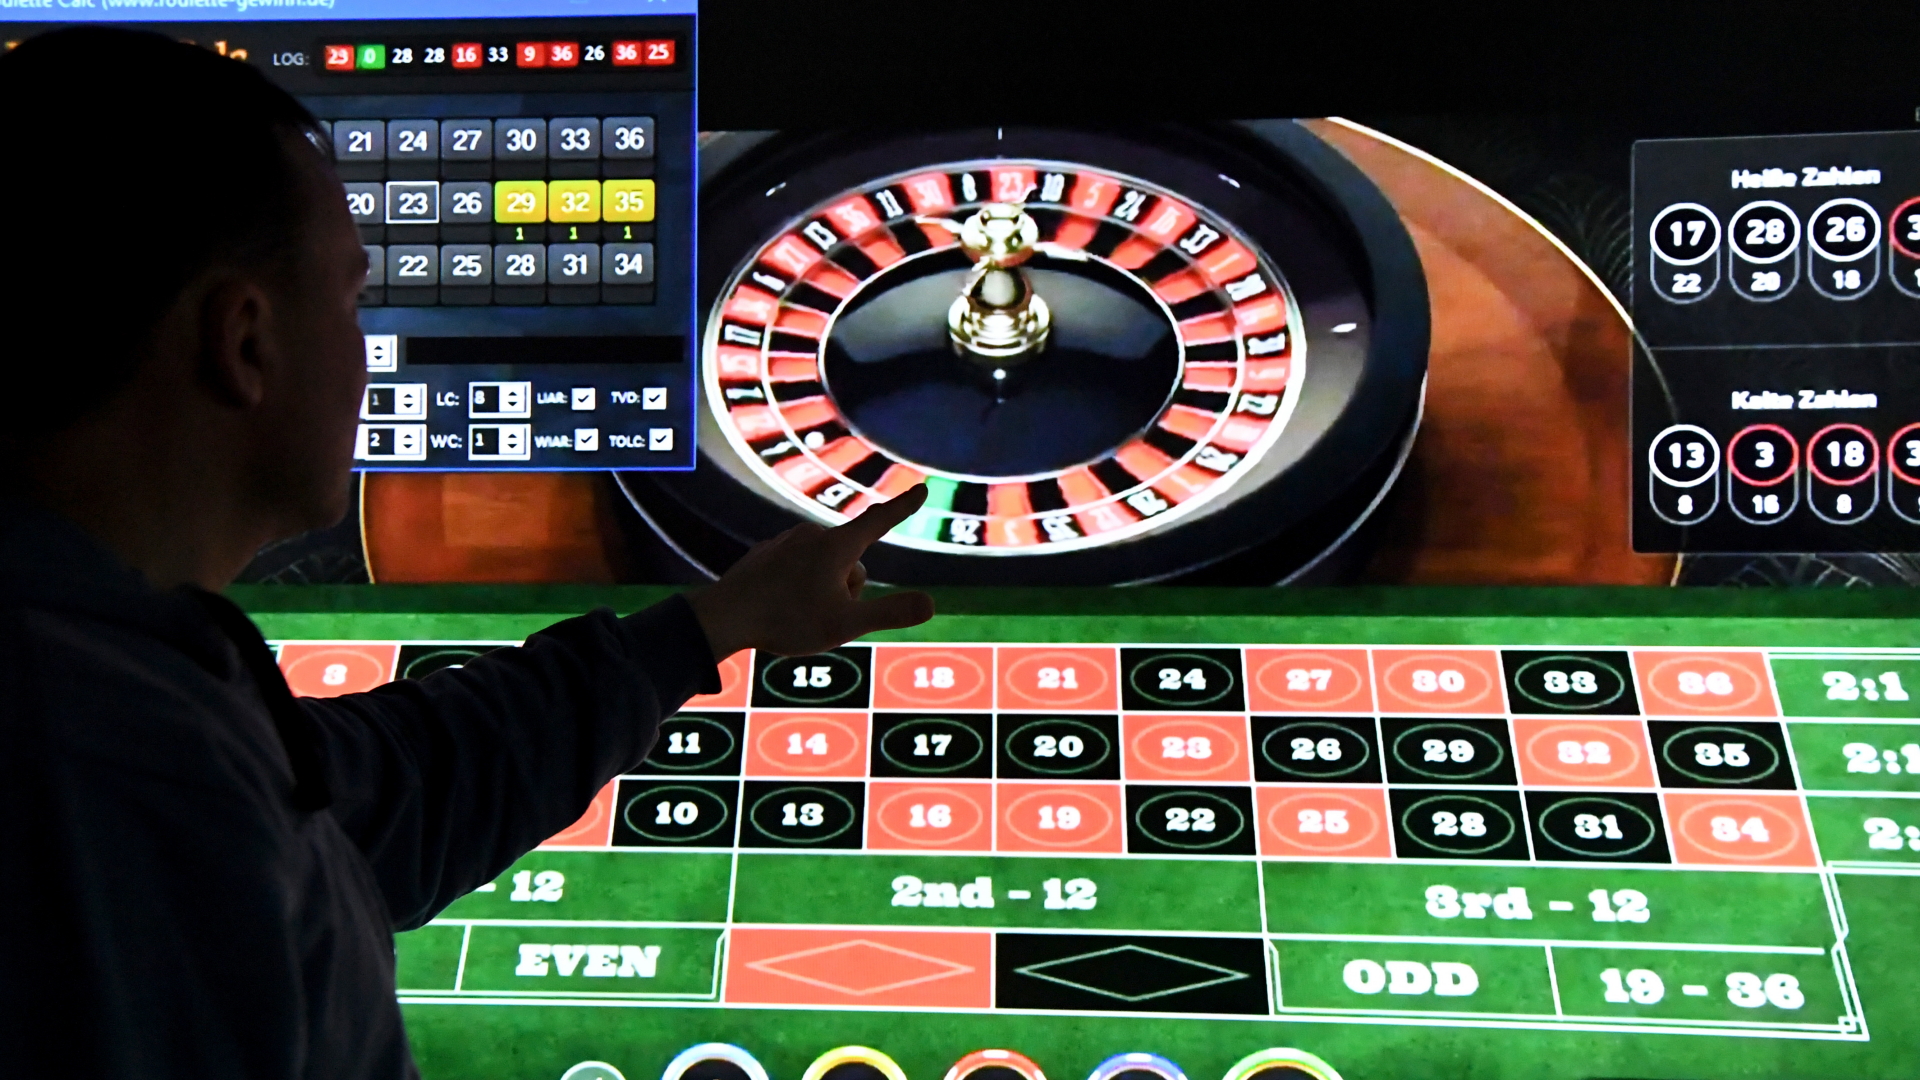 gewinne den Jackpot im Casino führt nicht zu finanziellem Wohlstand